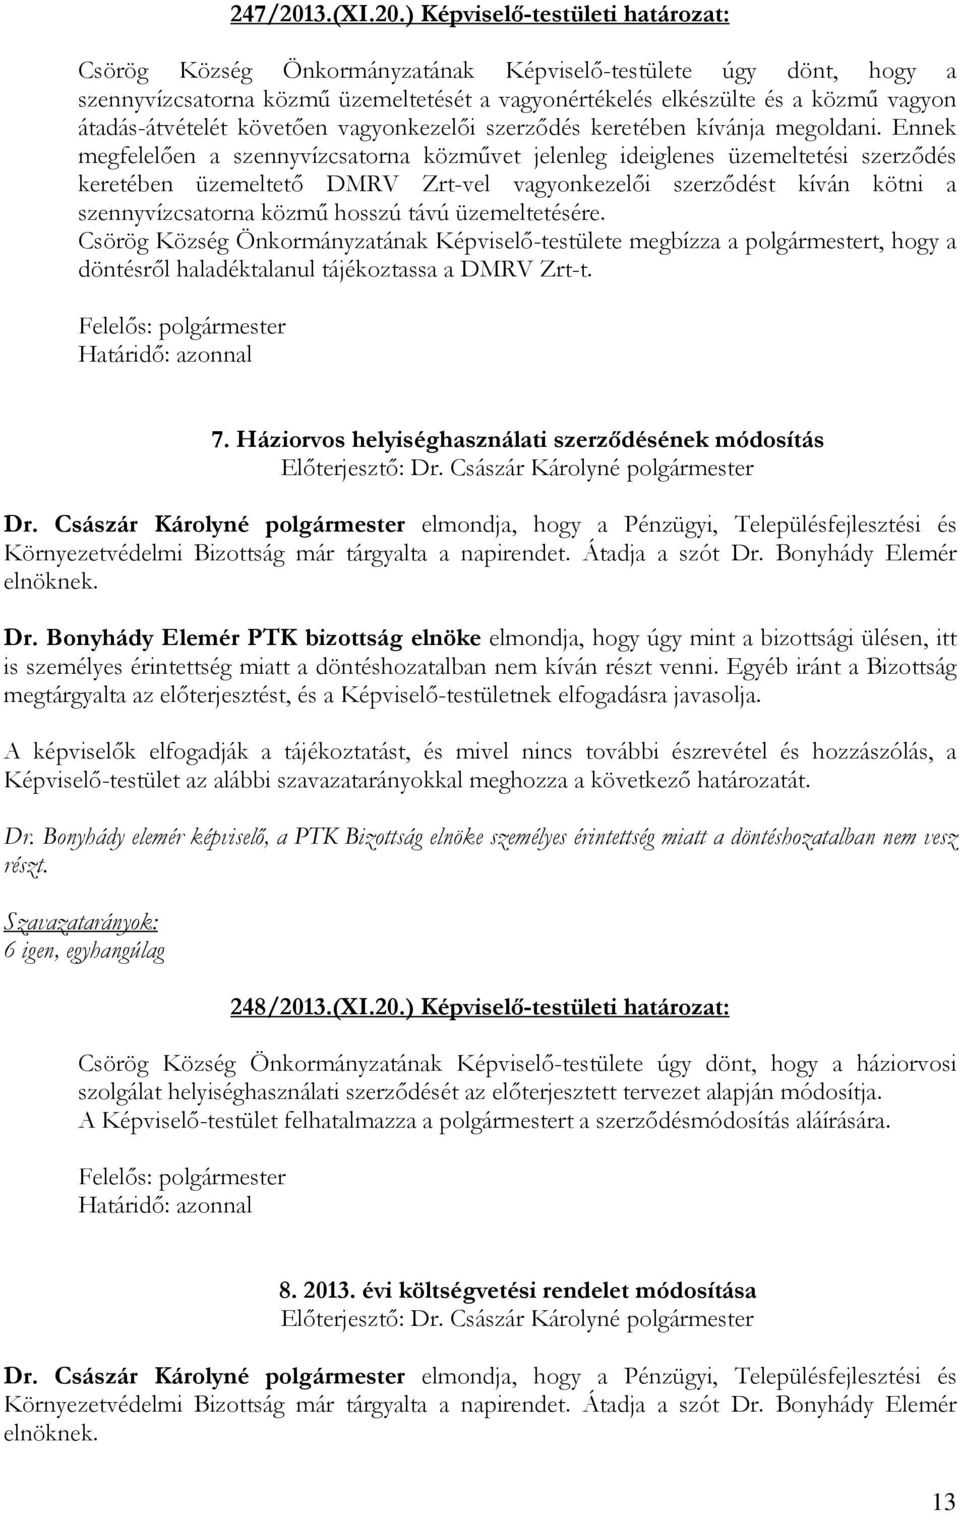 ) Képviselı-testületi határozat: Csörög Község Önkormányzatának Képviselı-testülete úgy dönt, hogy a szennyvízcsatorna közmő üzemeltetését a vagyonértékelés elkészülte és a közmő vagyon